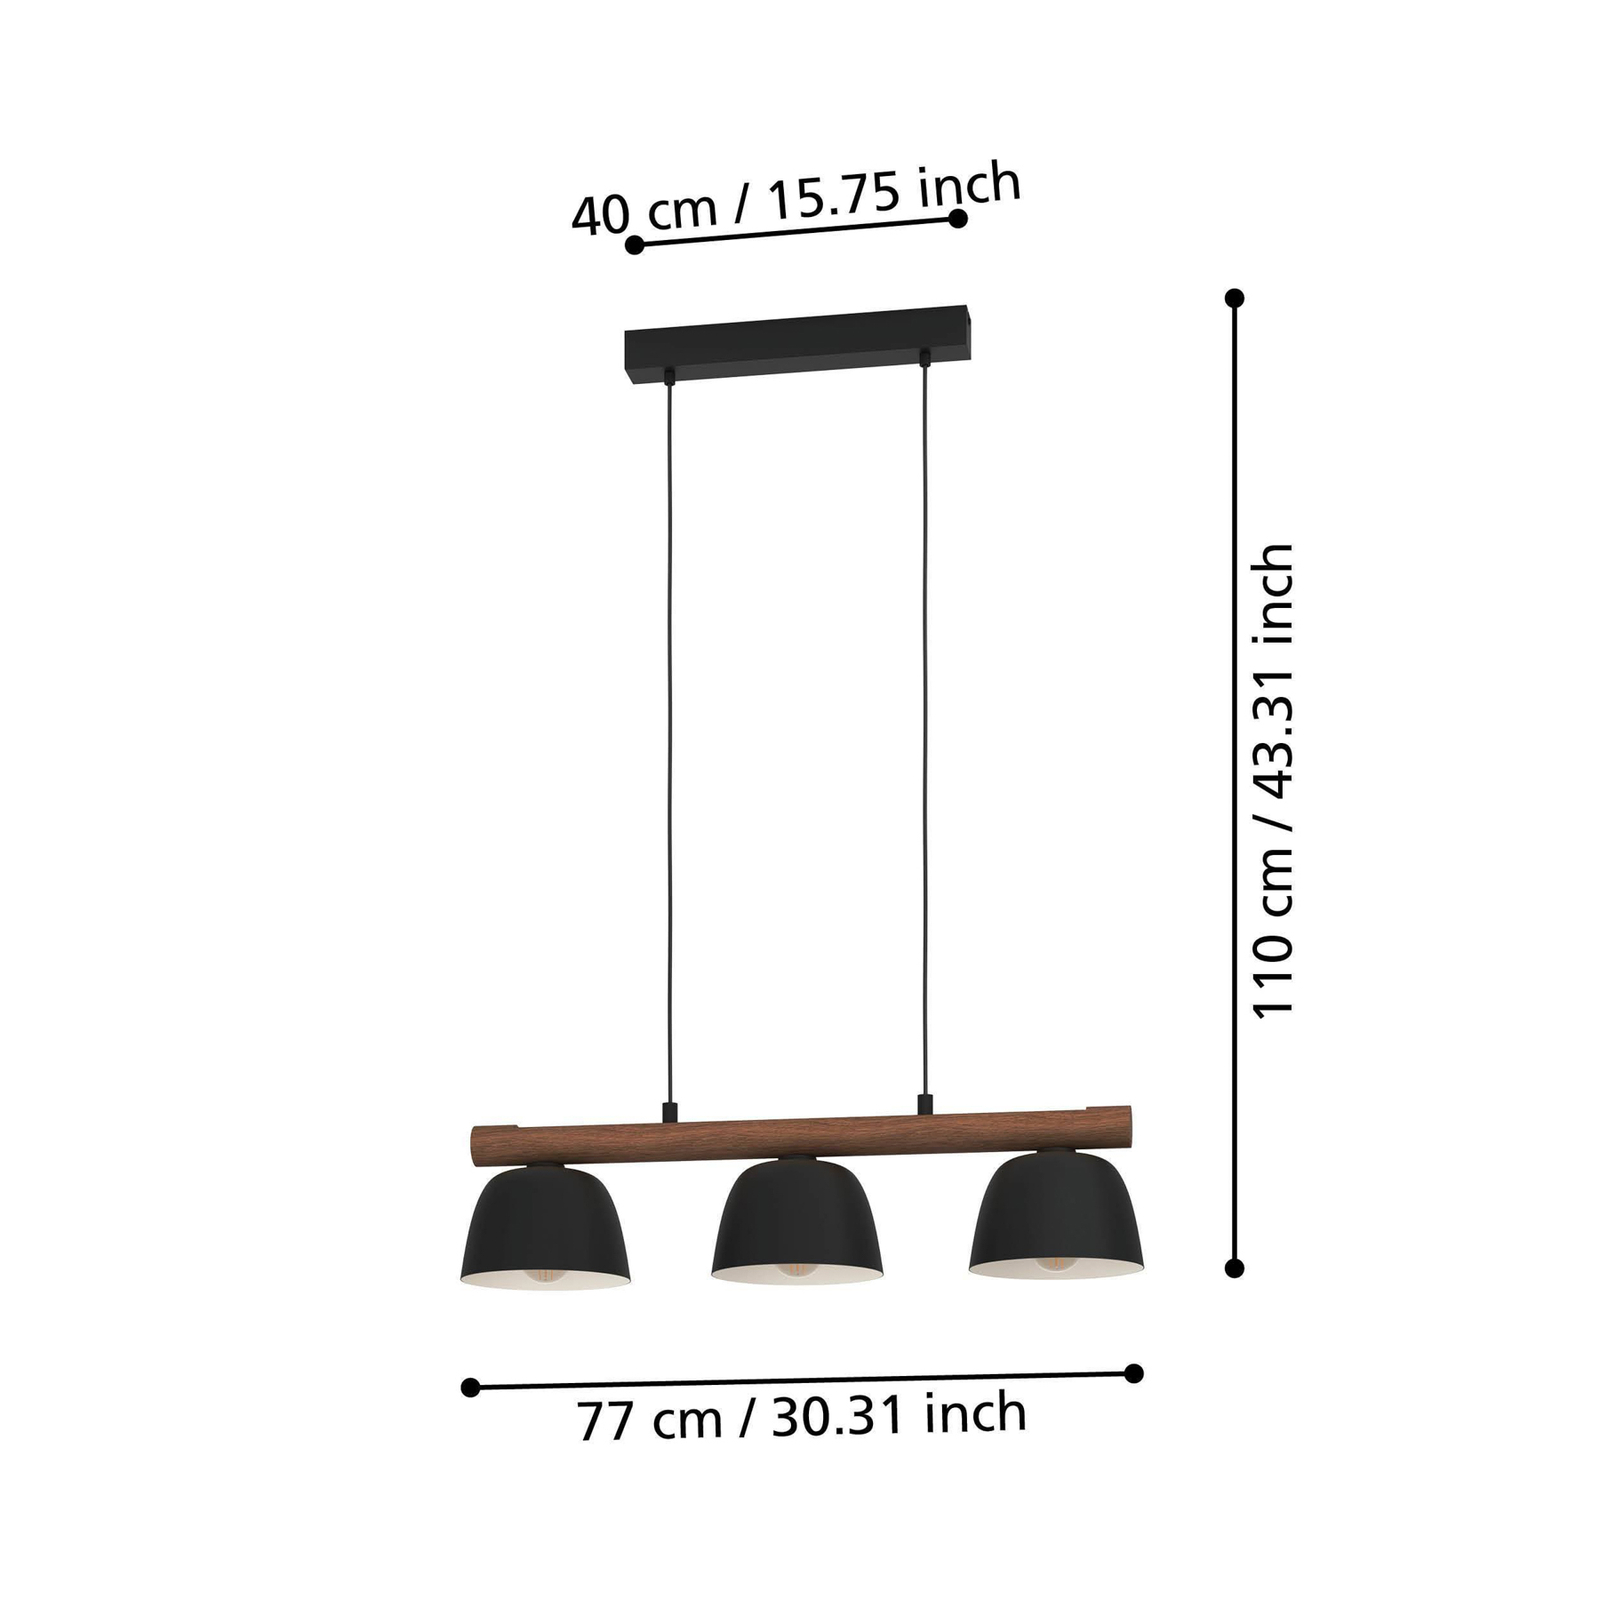 Sherburn pendant light, length 77 cm, black/brown, 3-bulb.